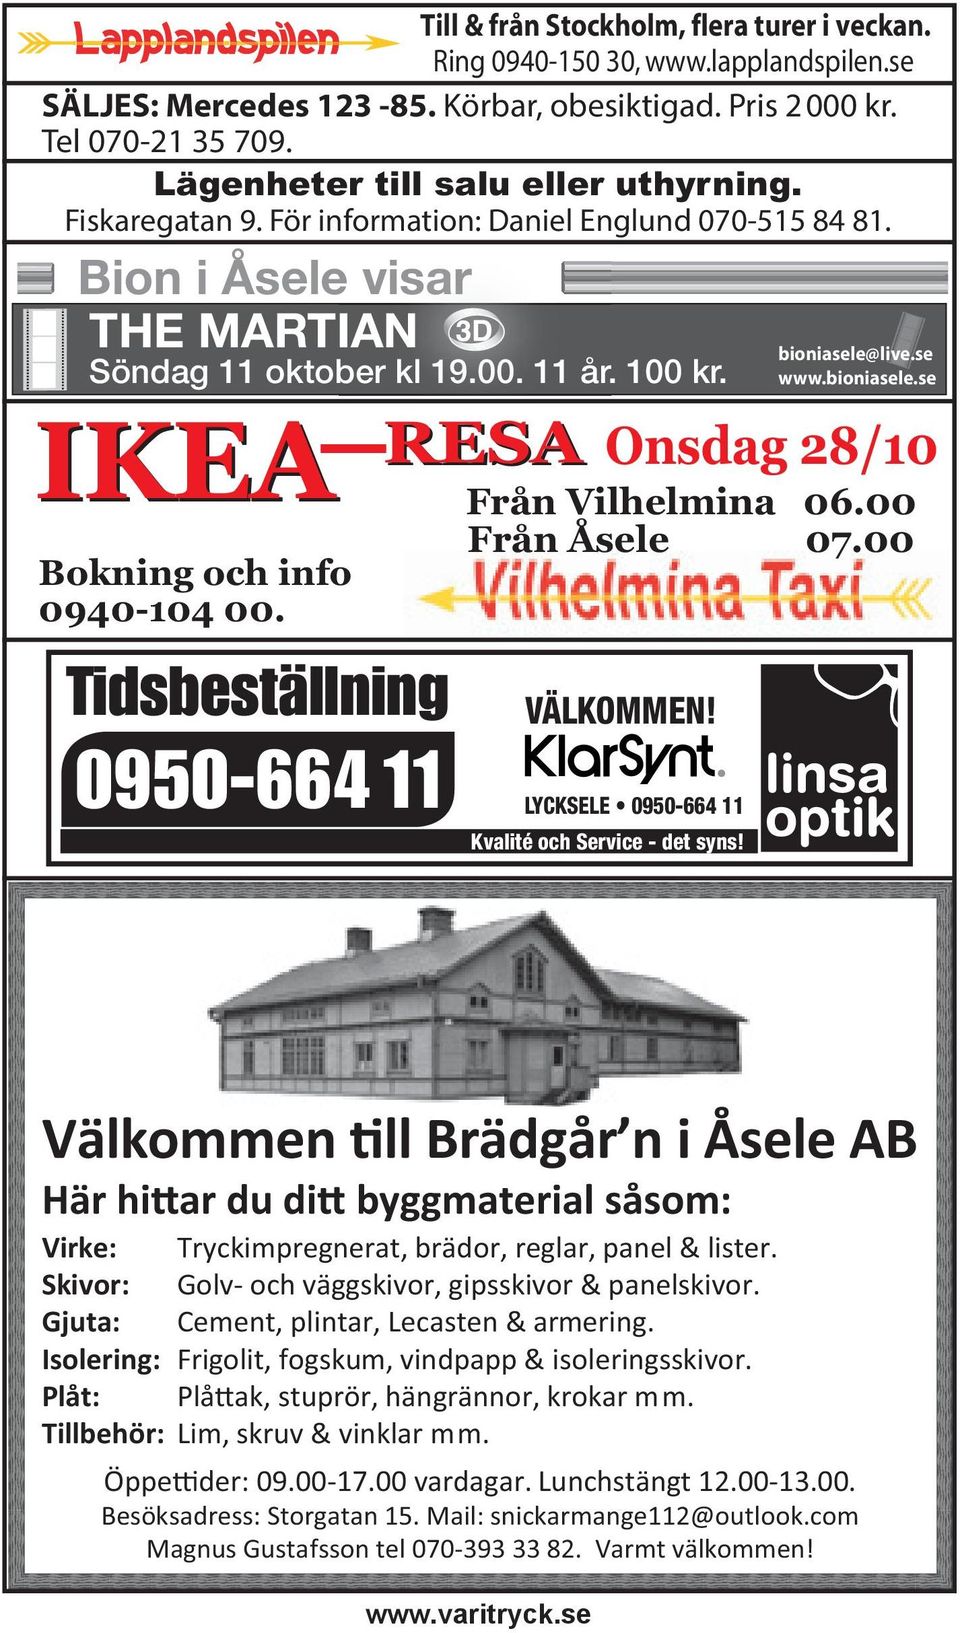 IKEA Bokning och info 0940-104 00. Tidsbeställning 0950-664 11 bioniasele@live.se www.bioniasele.se RESA Onsdag 28/10 Från Vilhelmina 06.00 Från Åsele 07.00 VÄLKOMMEN!